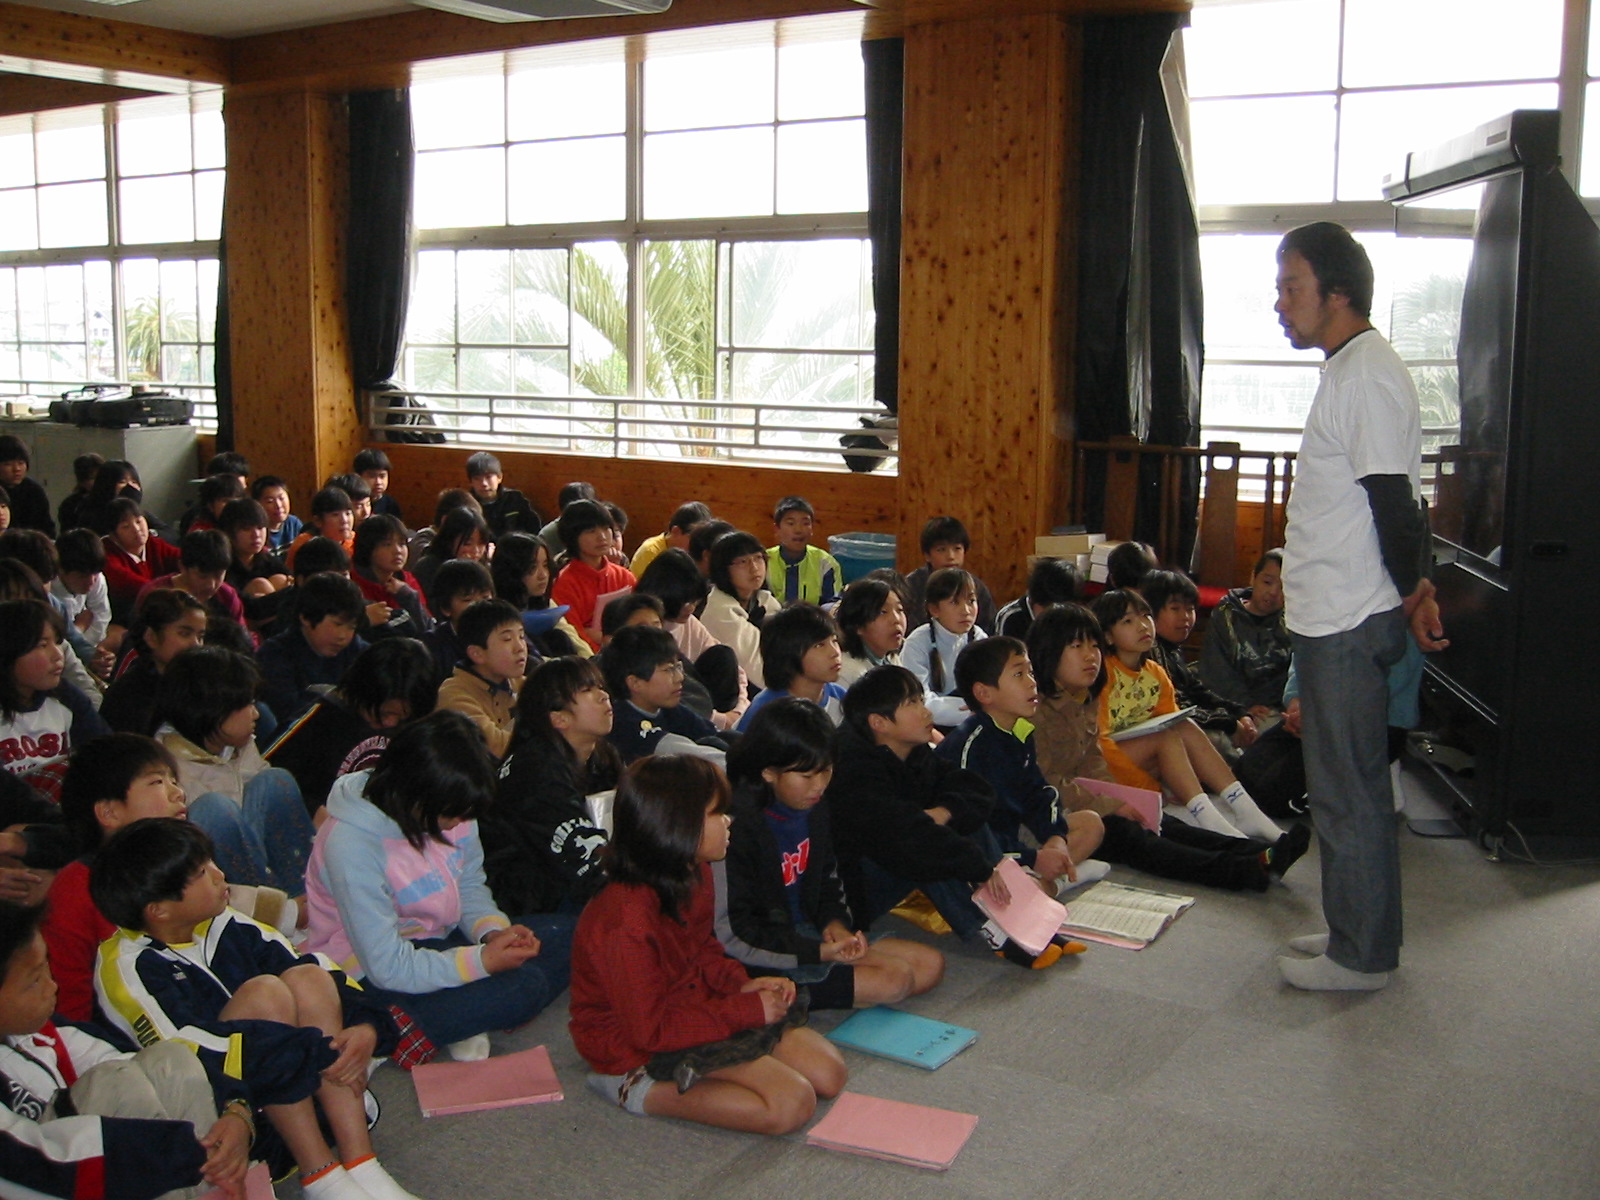 札幌市立中の島小学校